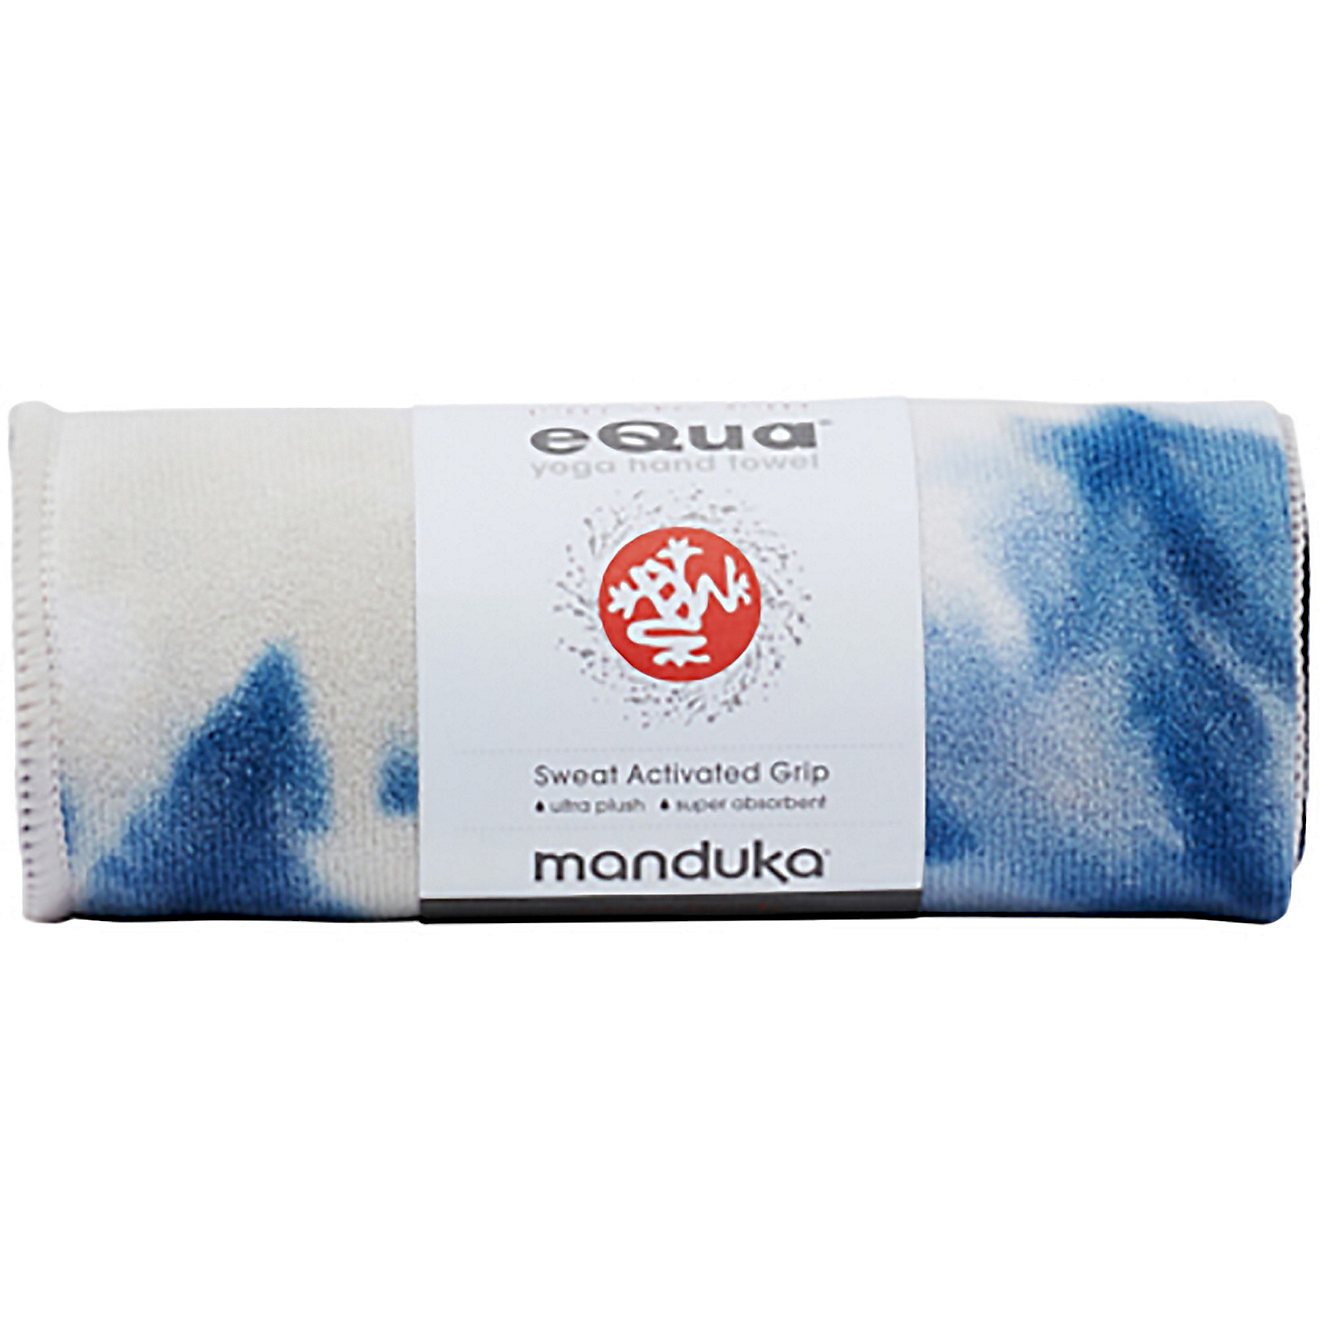 Manduka yogitoes Yoga Towel                                                                                                      - view number 3